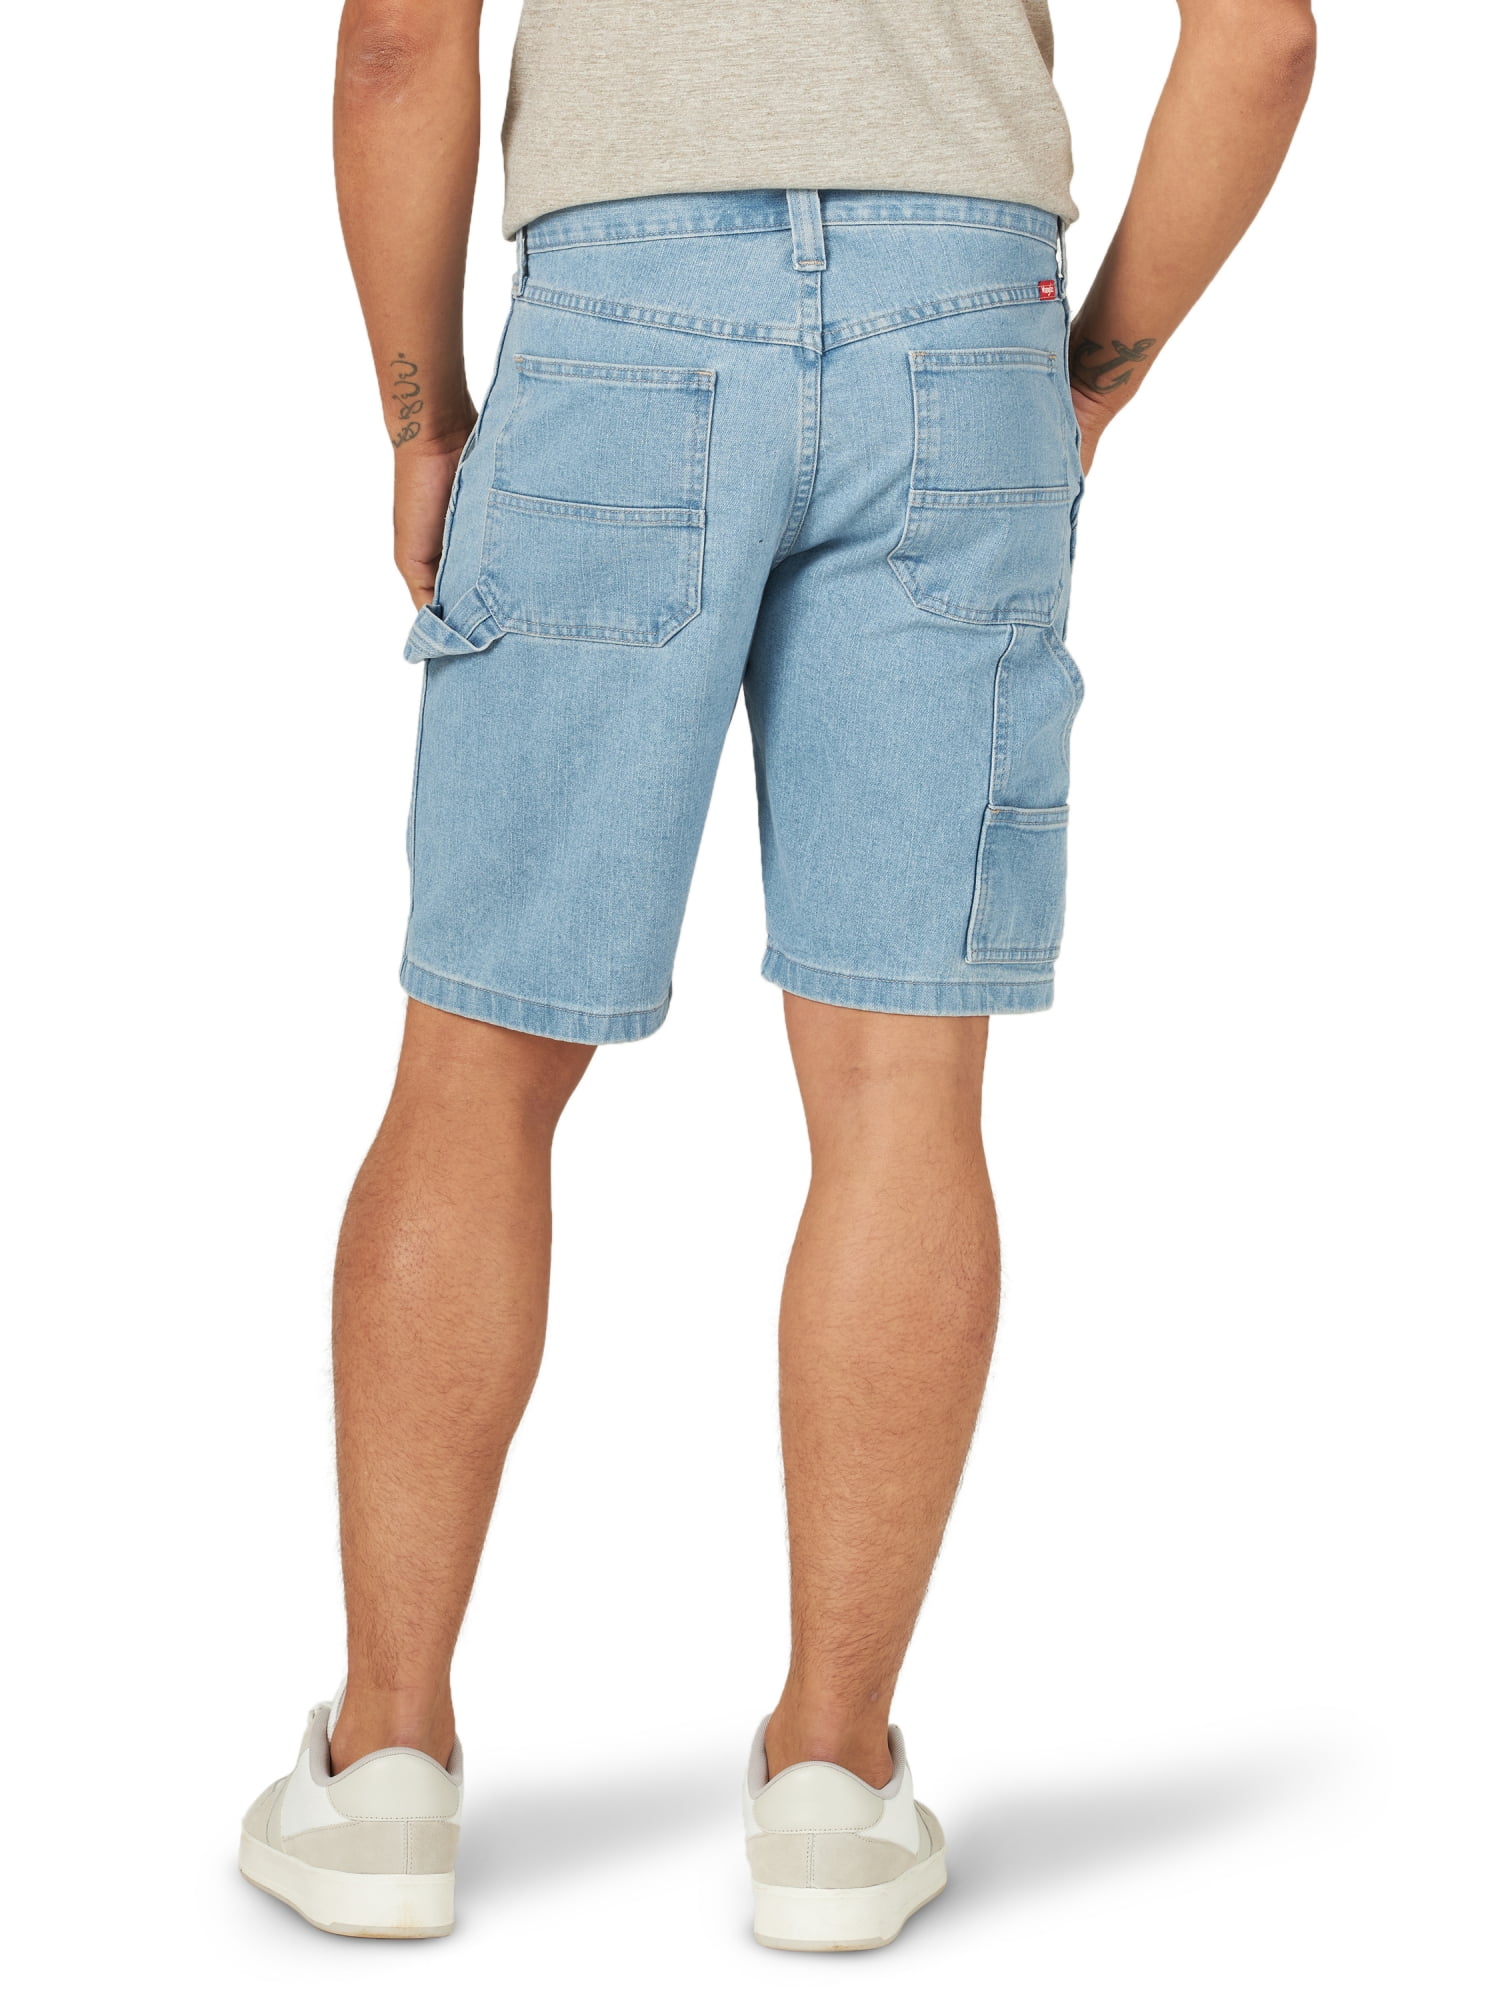 Teal Shorts for Men